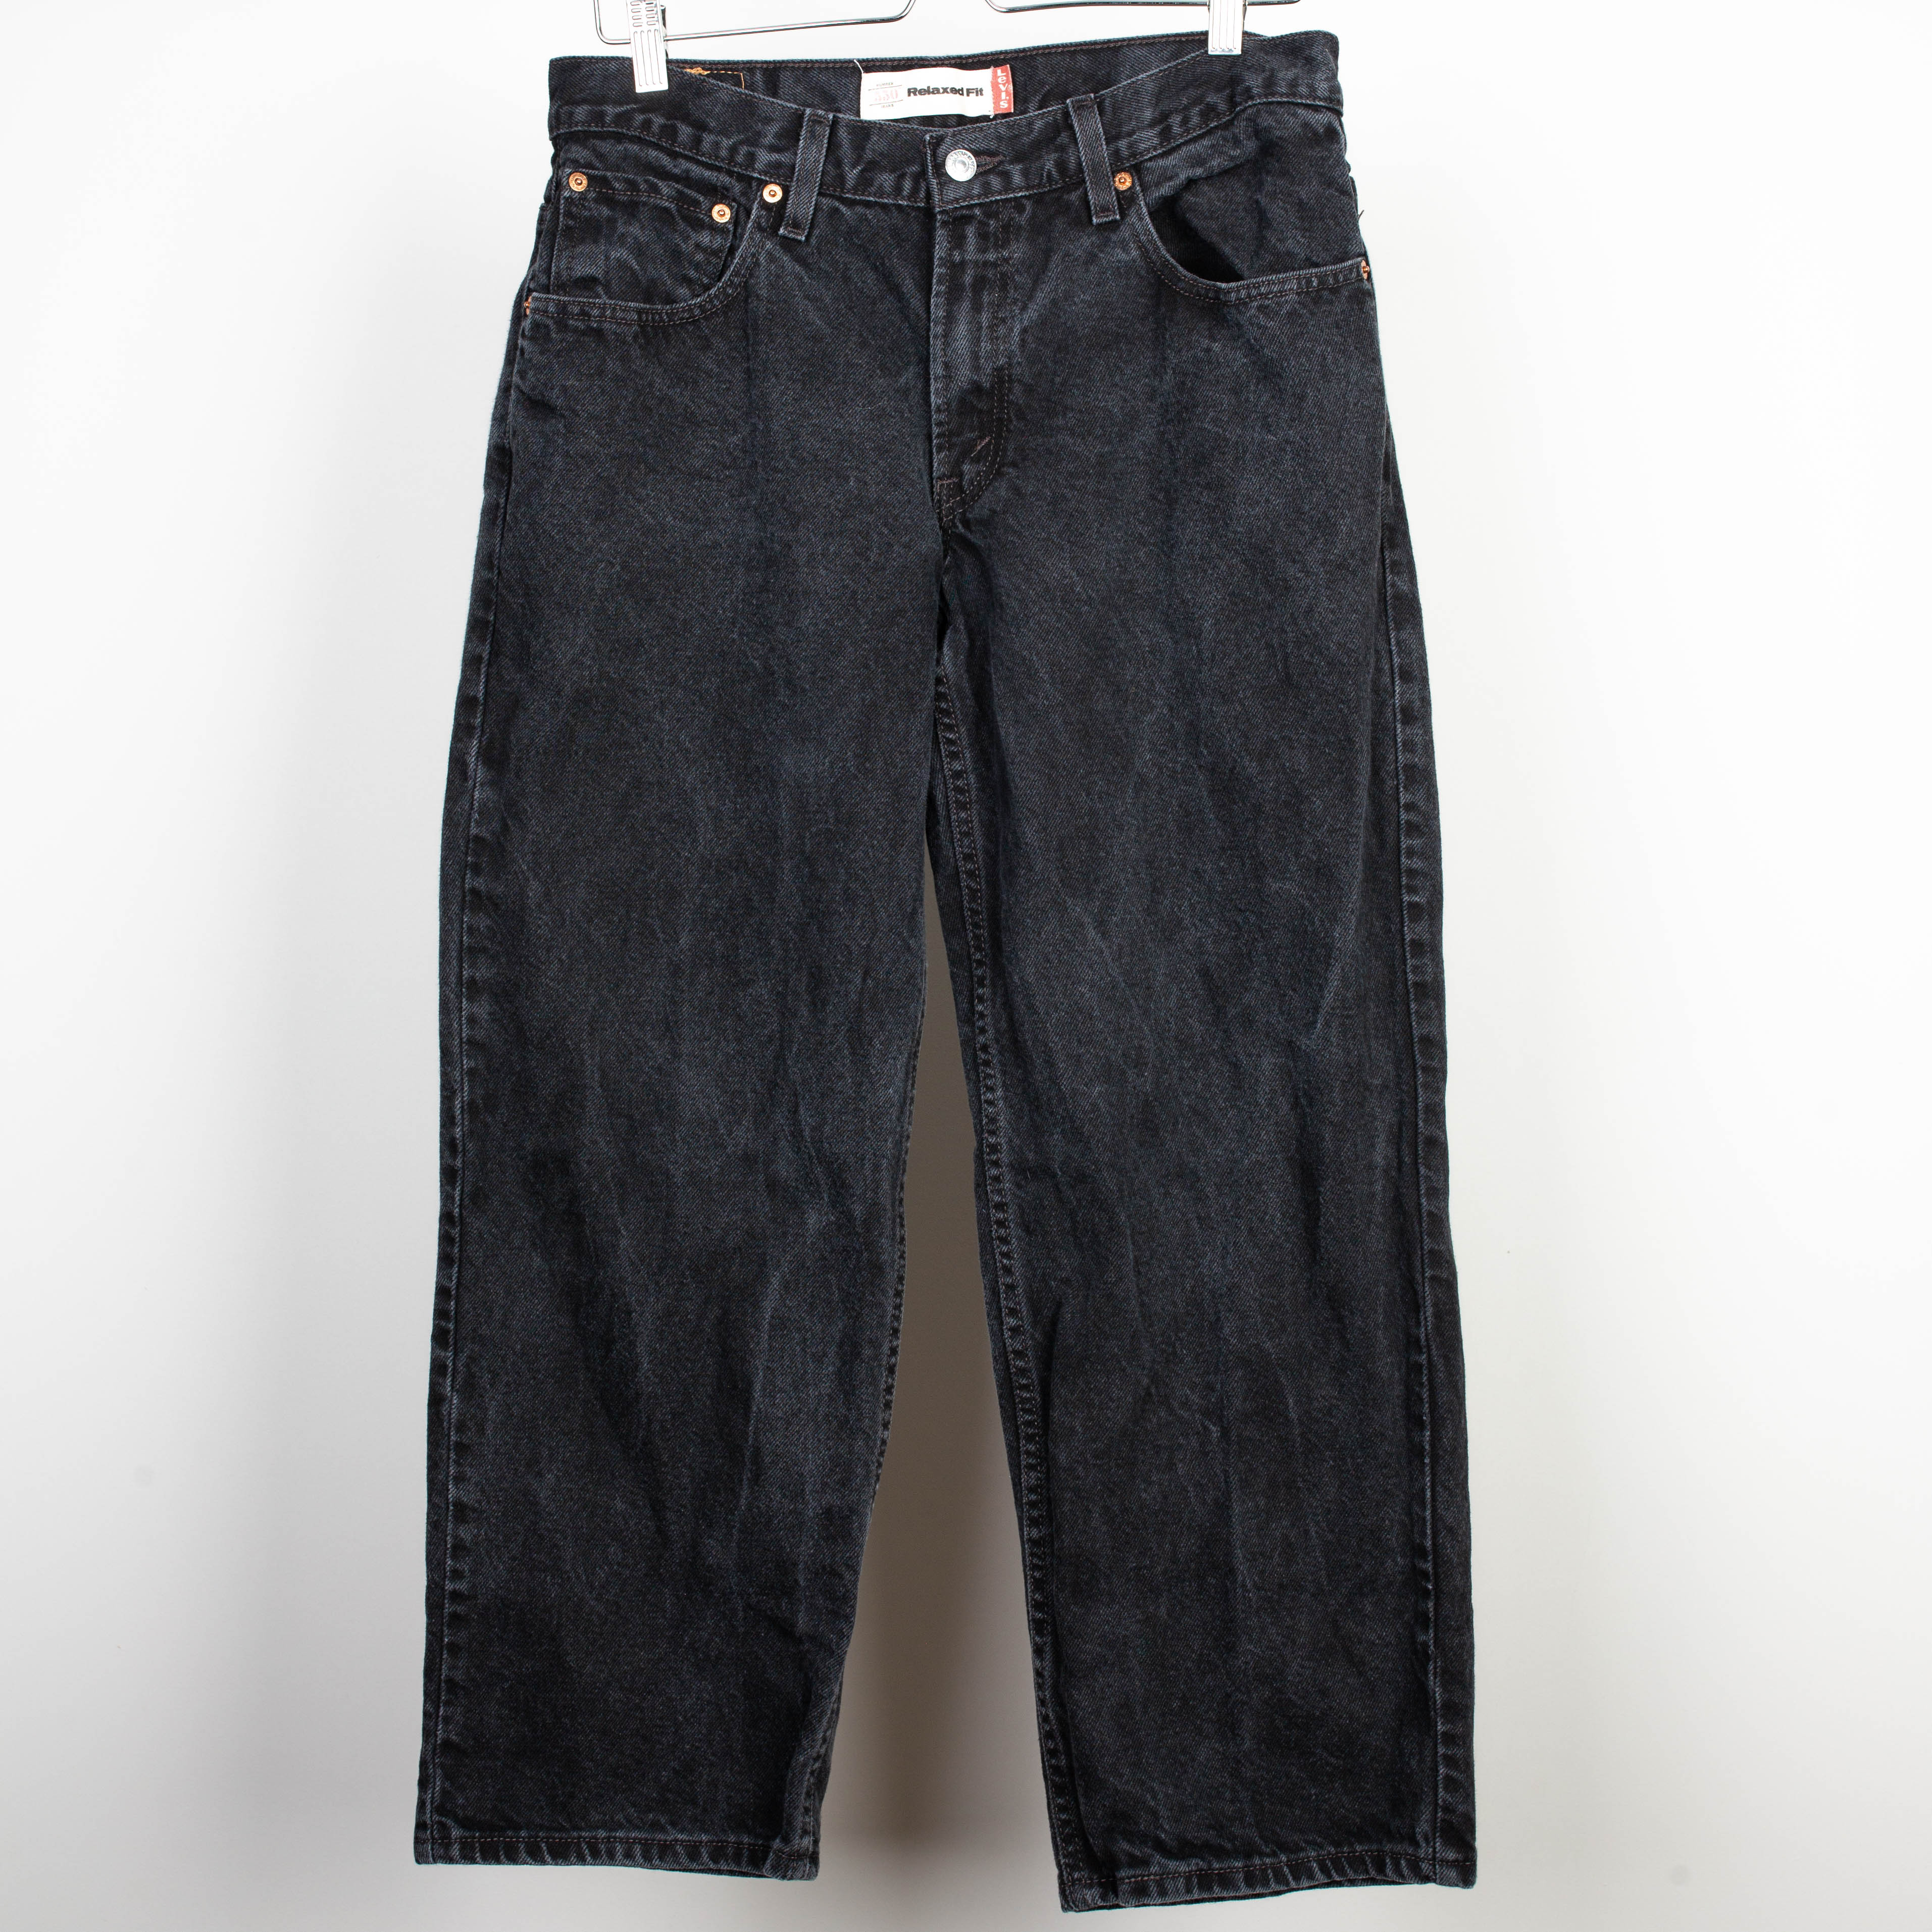 Levis 550 Denim Jeans Size 33